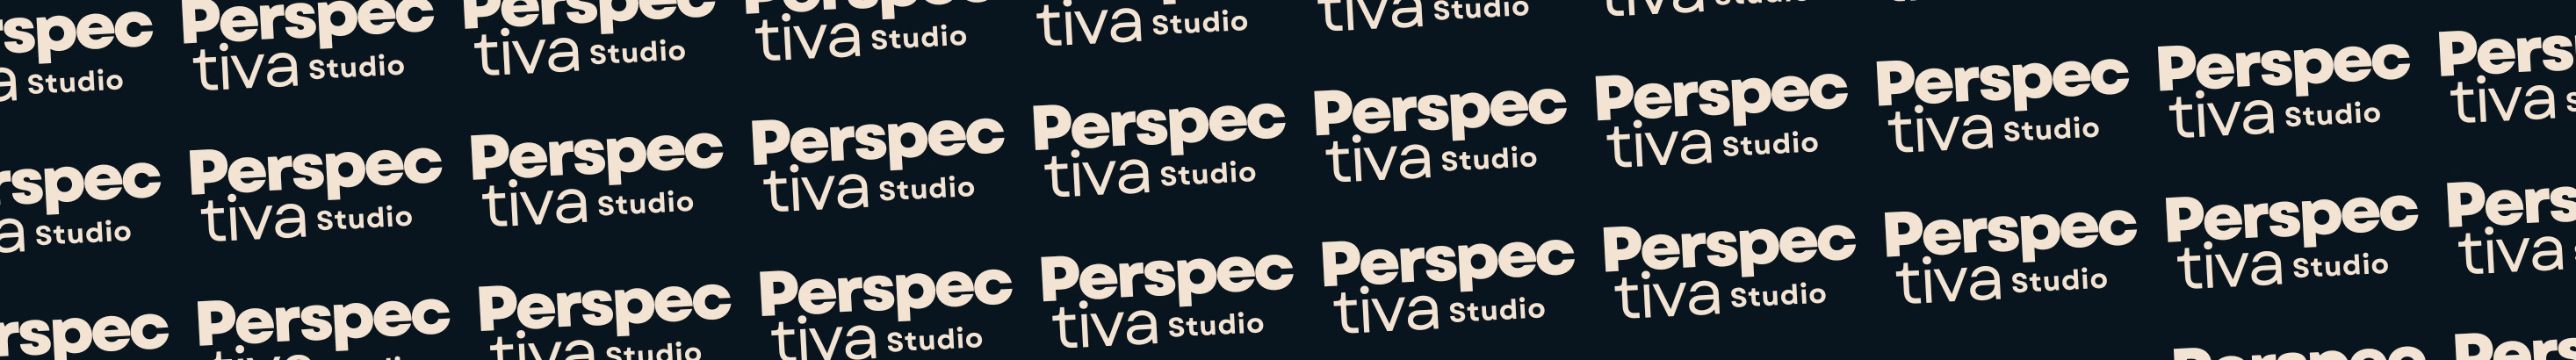 Perspectiva Studio's profile banner